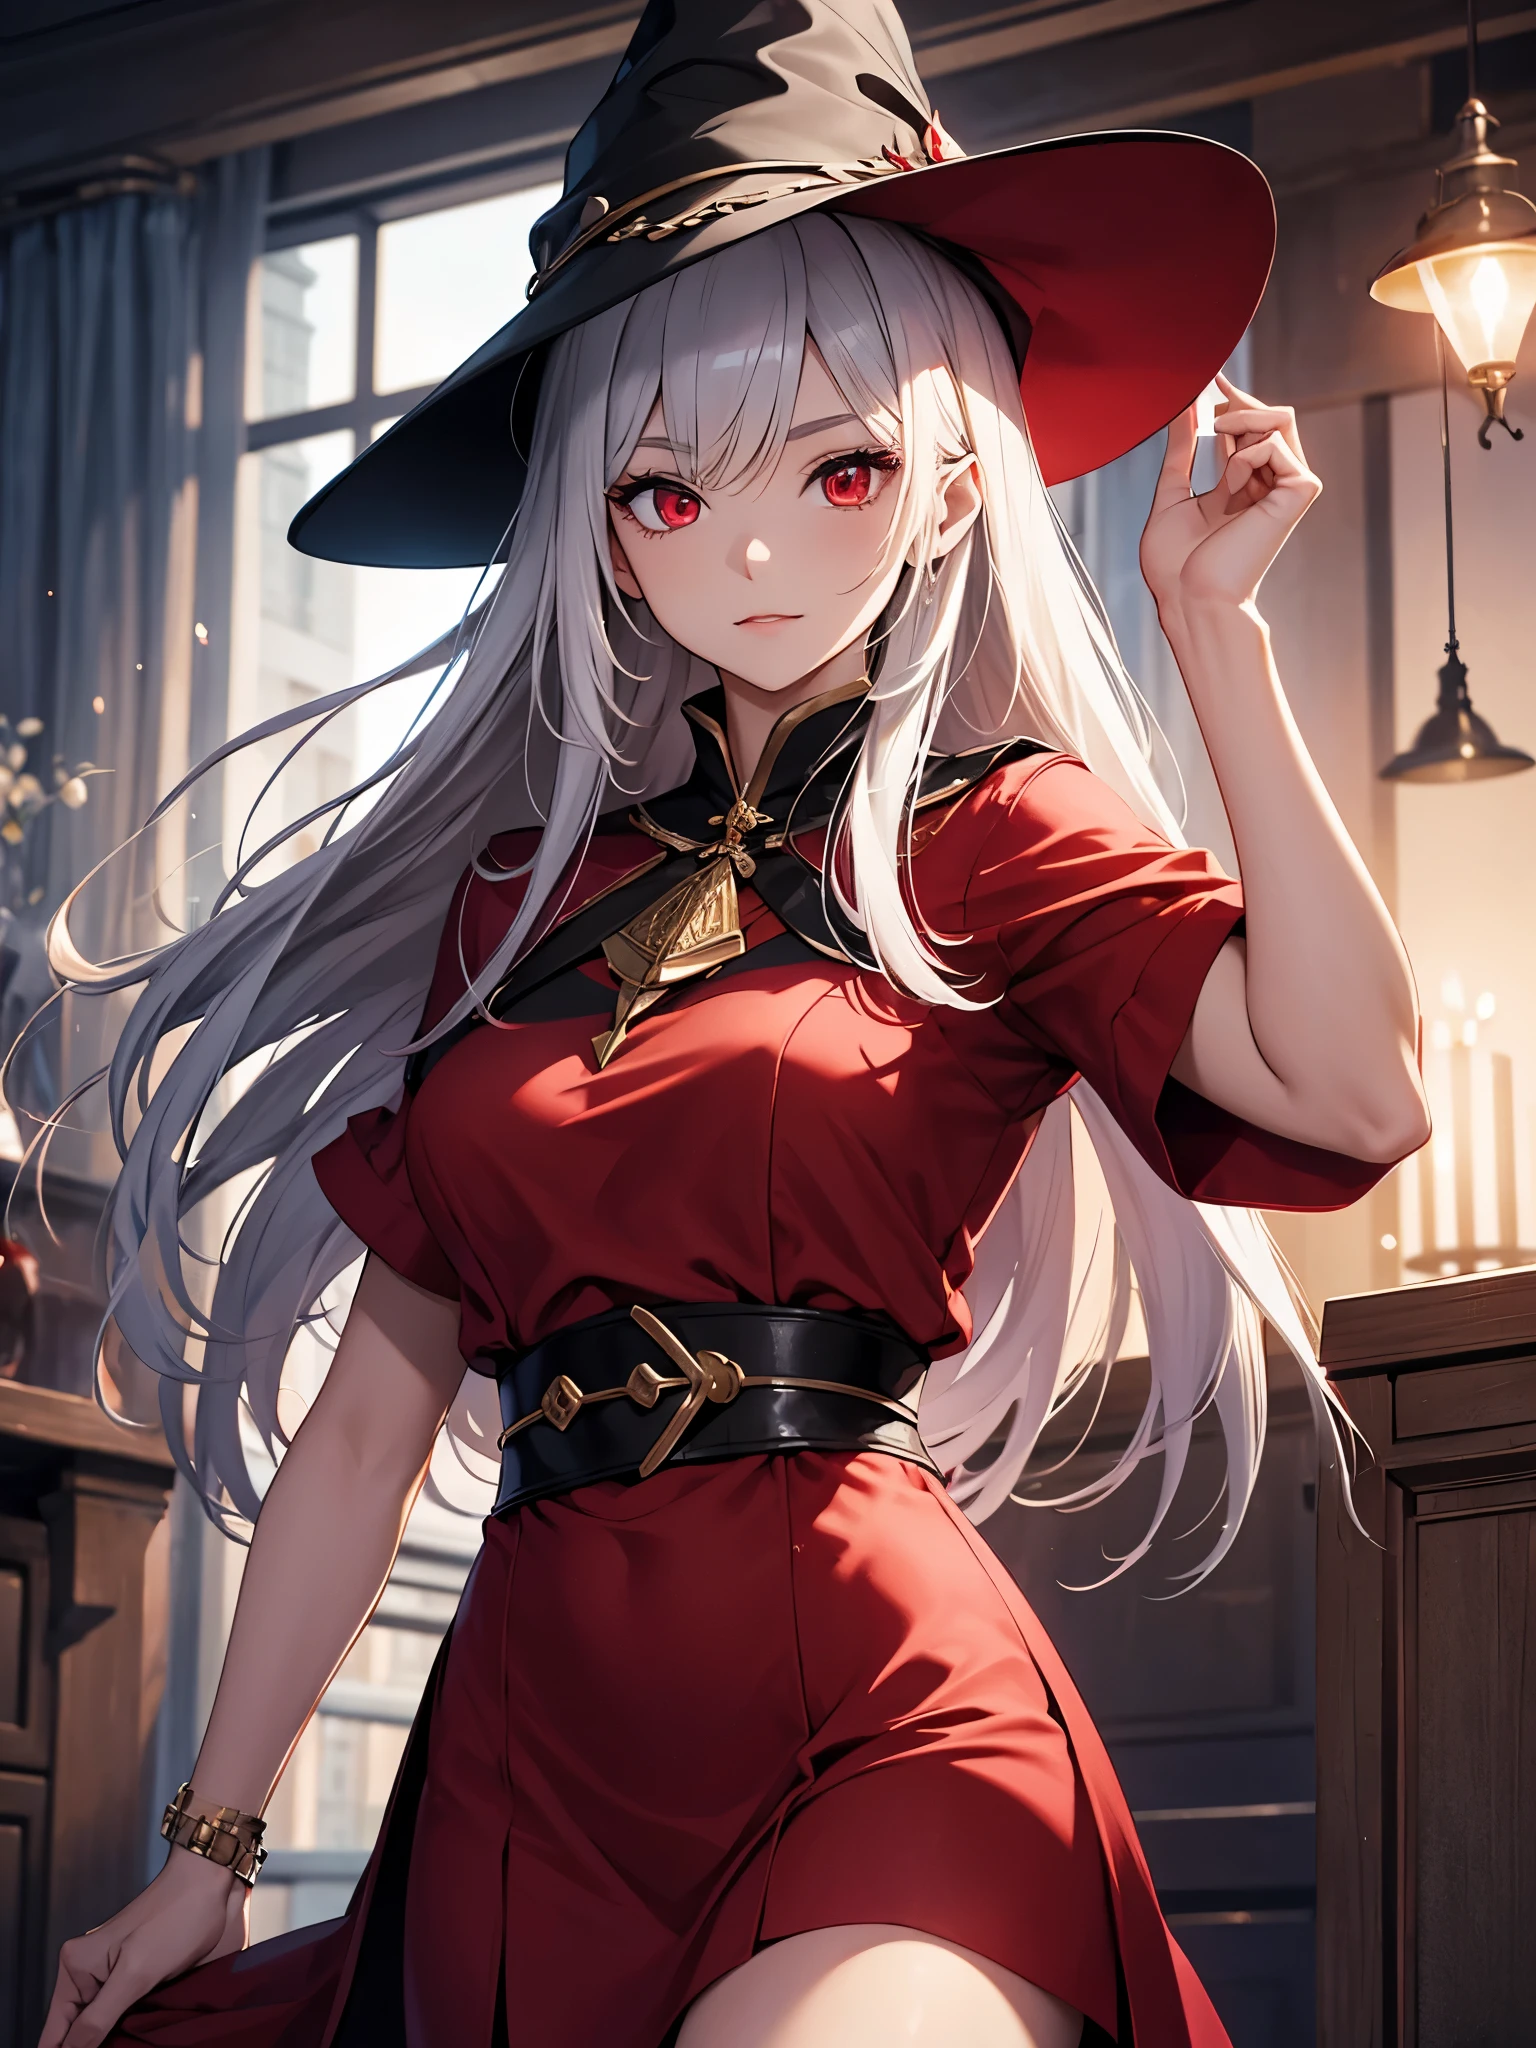 一個成熟的女孩, 戴上巫師帽, 穿红色衣服, 紅眼睛, 淺色皮膚